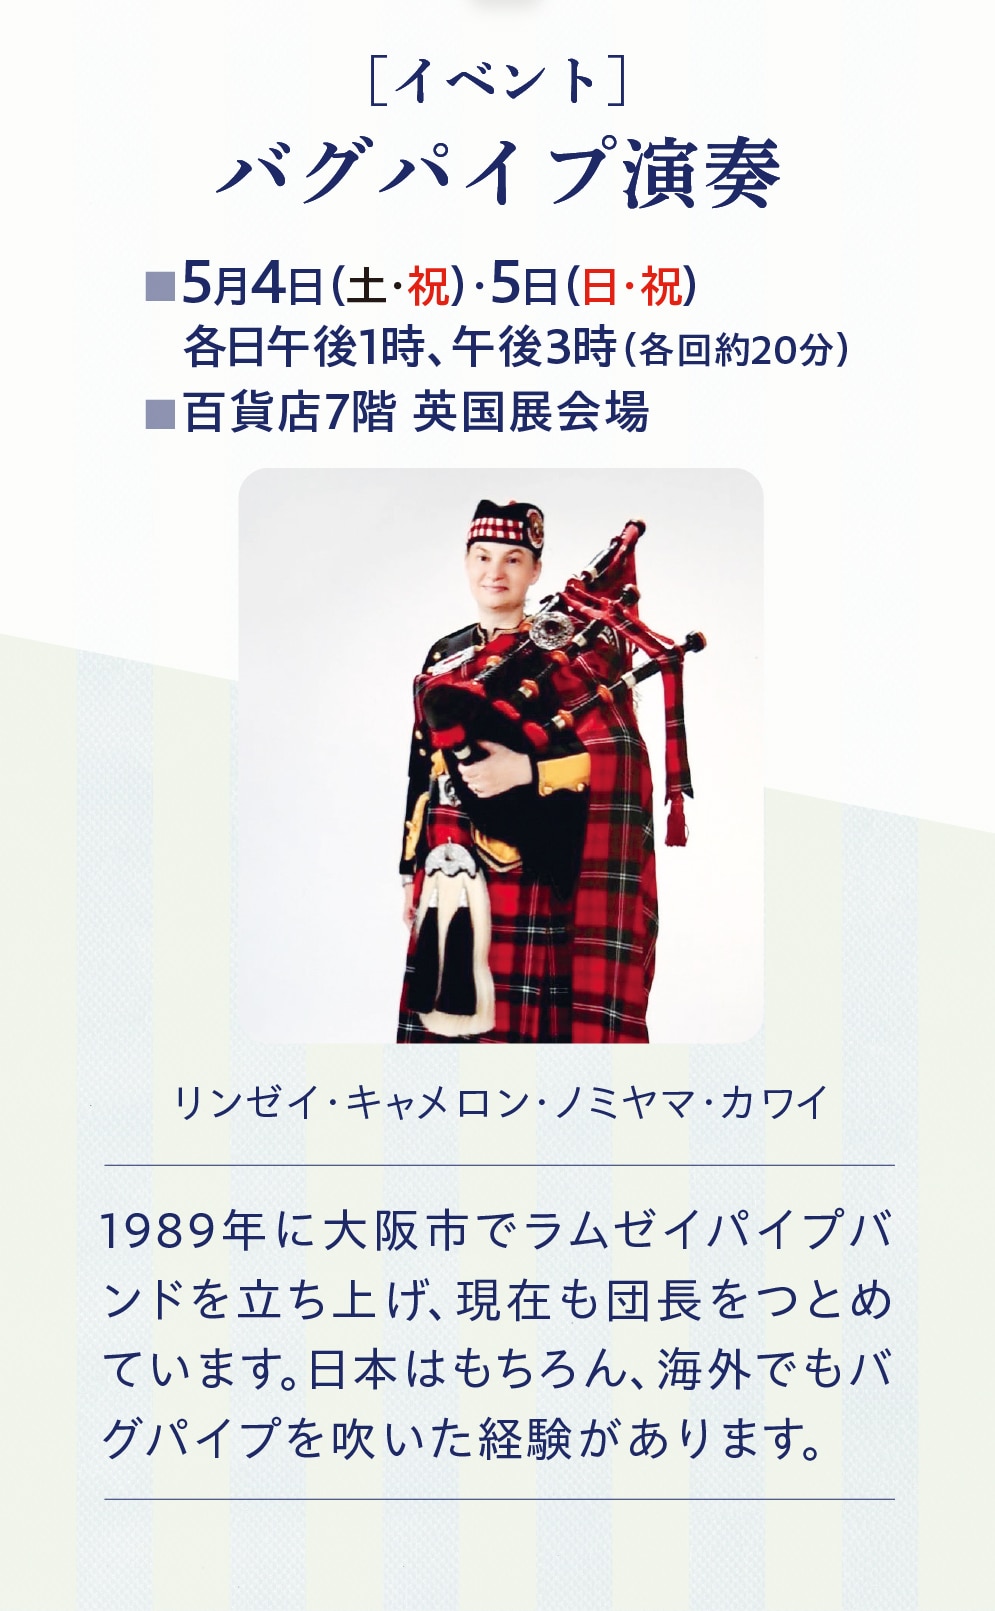 [イベント]　バグパイプ演奏　5月4日(土・祝)・5日(日・祝) 各日午後1時、午後3時(各回約20分)　百貨店7階英国展会場　リンゼイ・キャメロン・ノミヤマ・カワイ　1989年に大阪市でラムゼイパイプバ ンドを立ち上げ、現在も団長をつとめ ています。日本はもちろん、海外でもバ グパイプを吹いた経験があります。